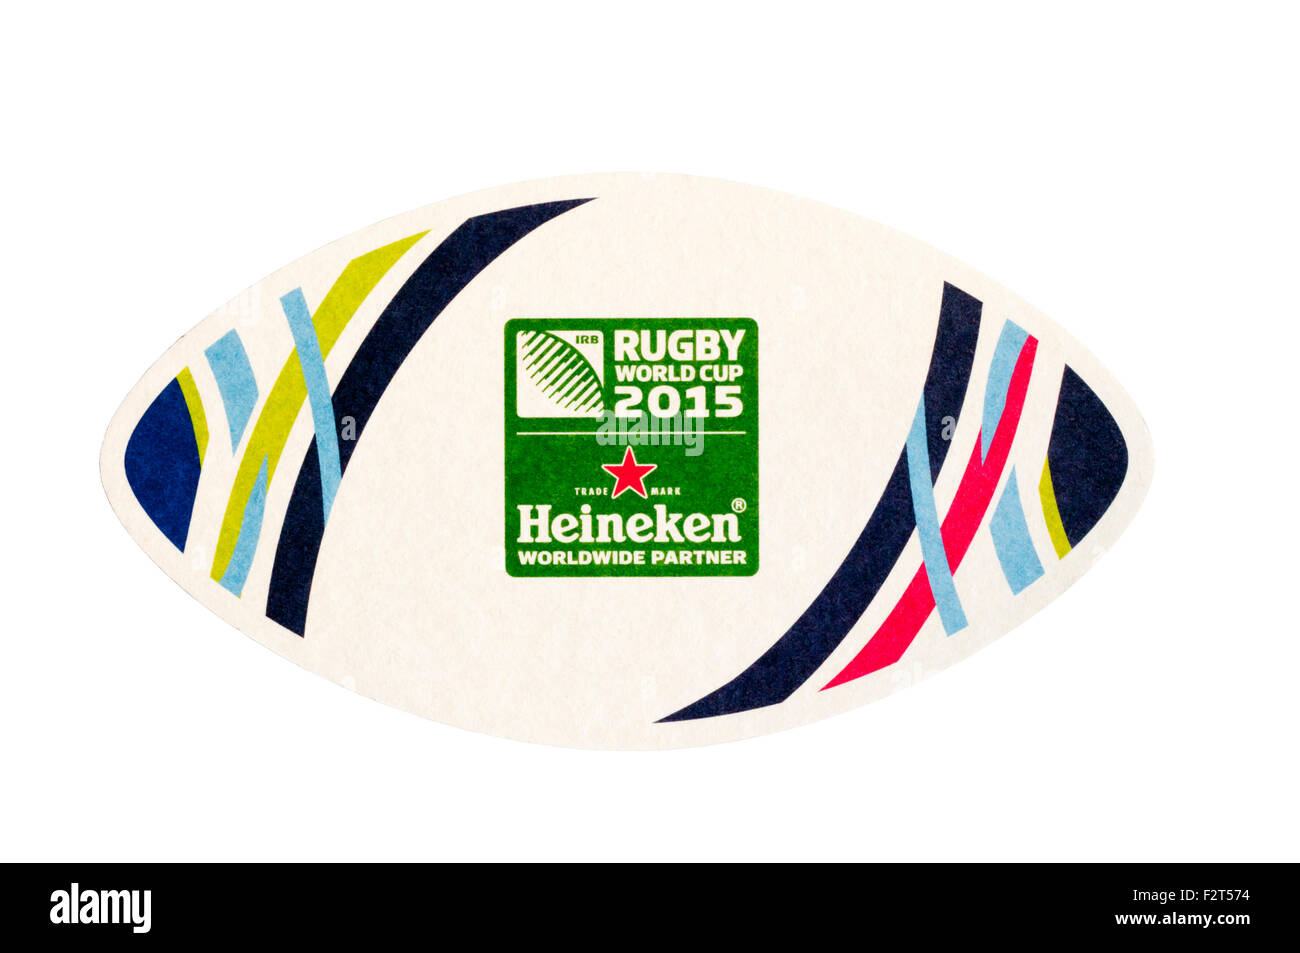 Ein Heineken Bierdeckel in Form von einem Rugby-Ball feiert die Rugby-Weltmeisterschaft 2015. Stockfoto